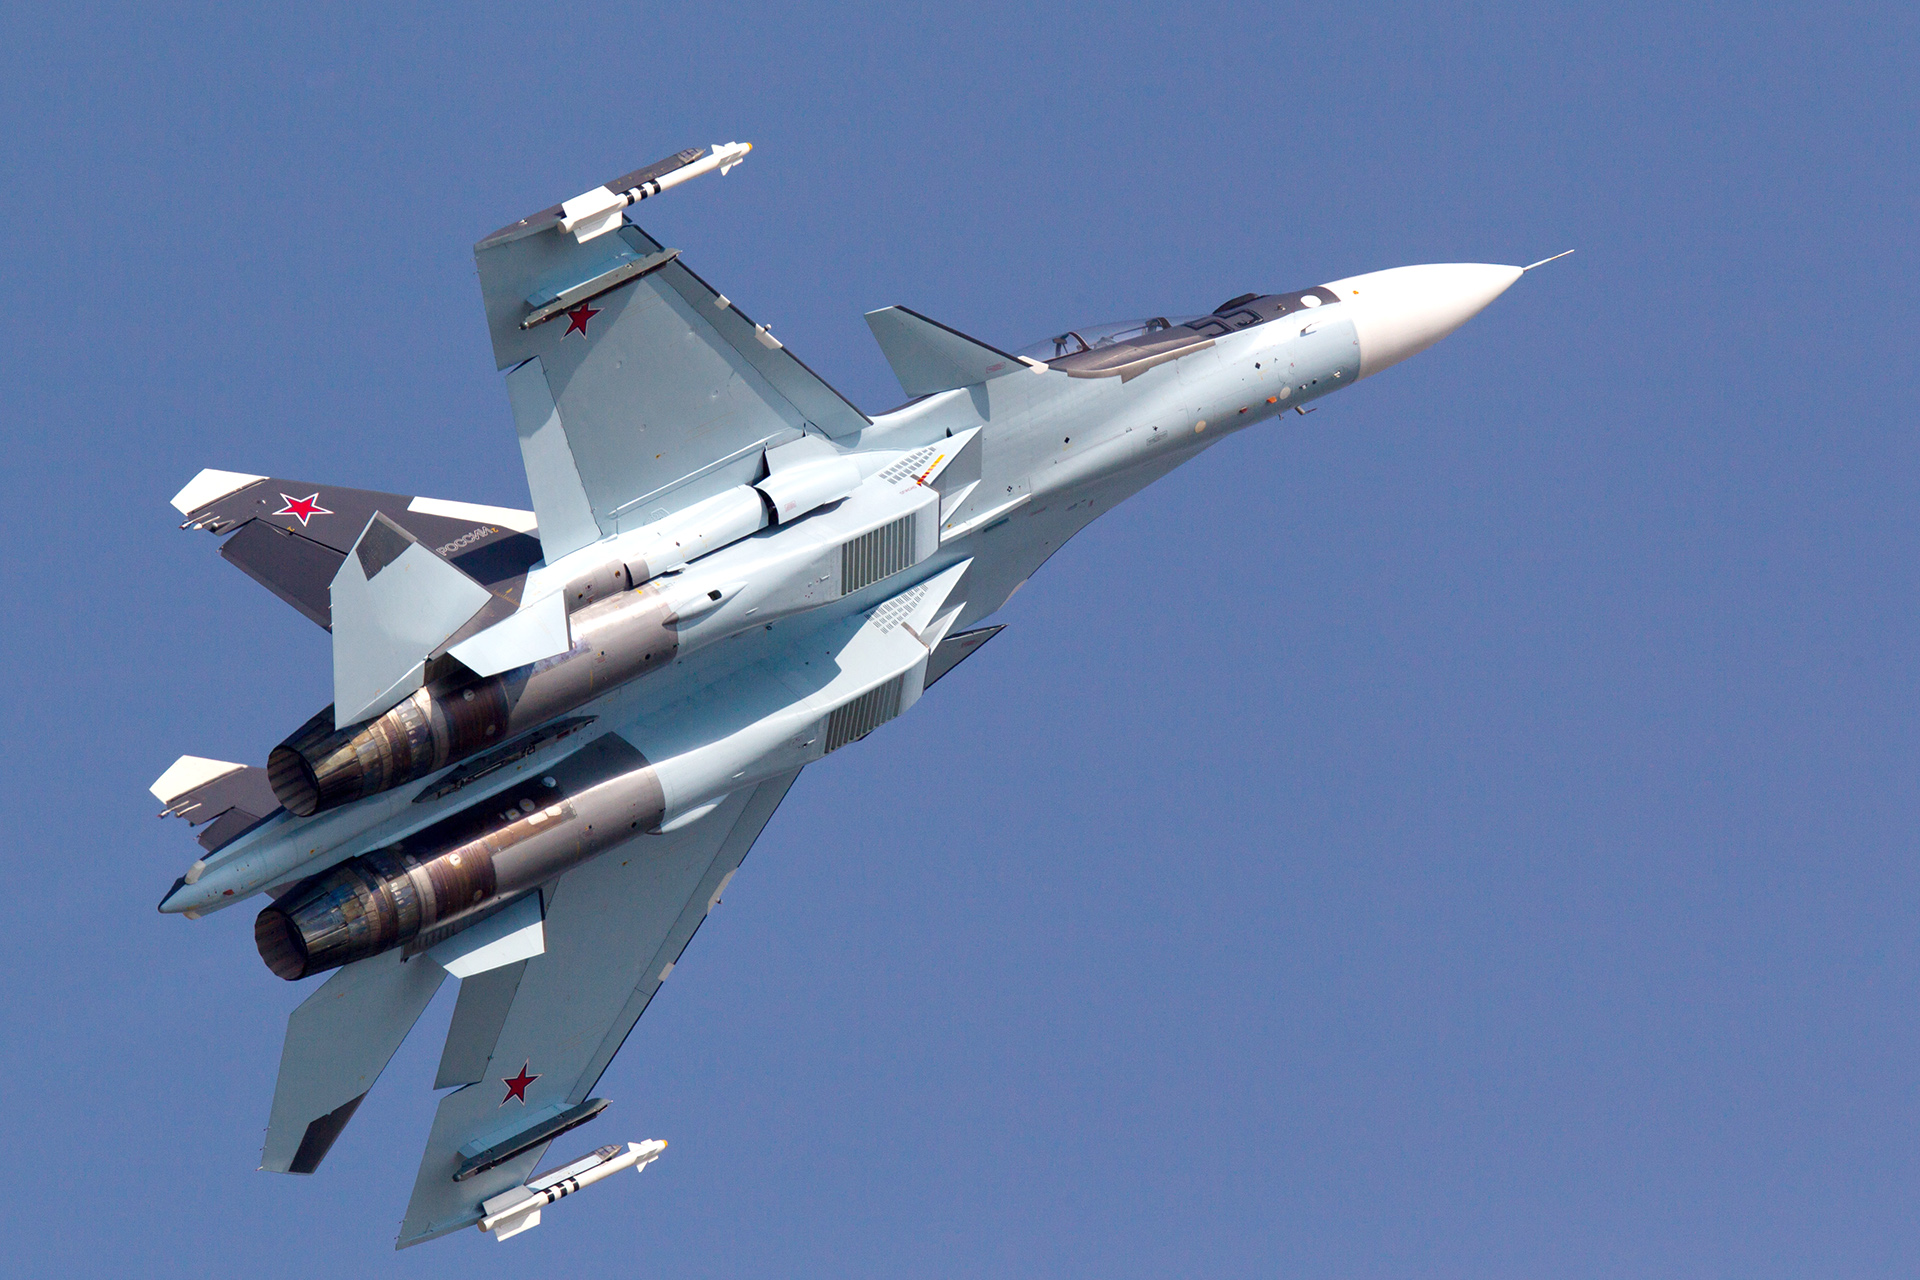 إيران تستكمل صفقة شراء طائرات مقاتلة روسية | أخبار – البوكس نيوز